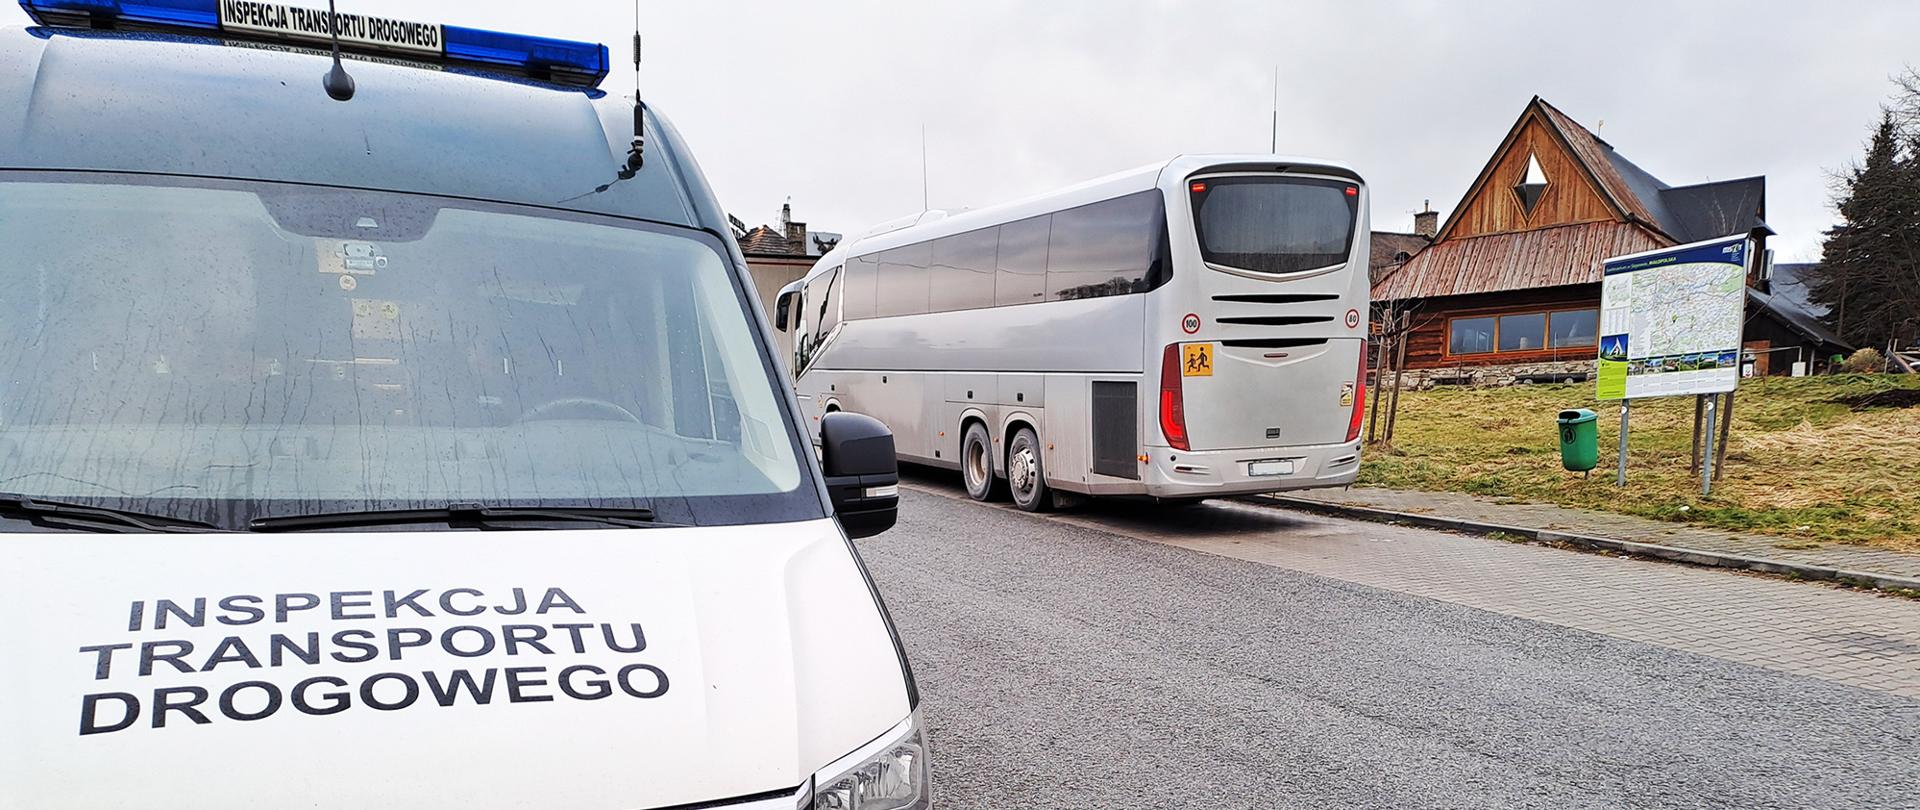 Kontrola małopolskich inspektorów zakończyła się wstrzymaniem dalszej jazdy autokaru
